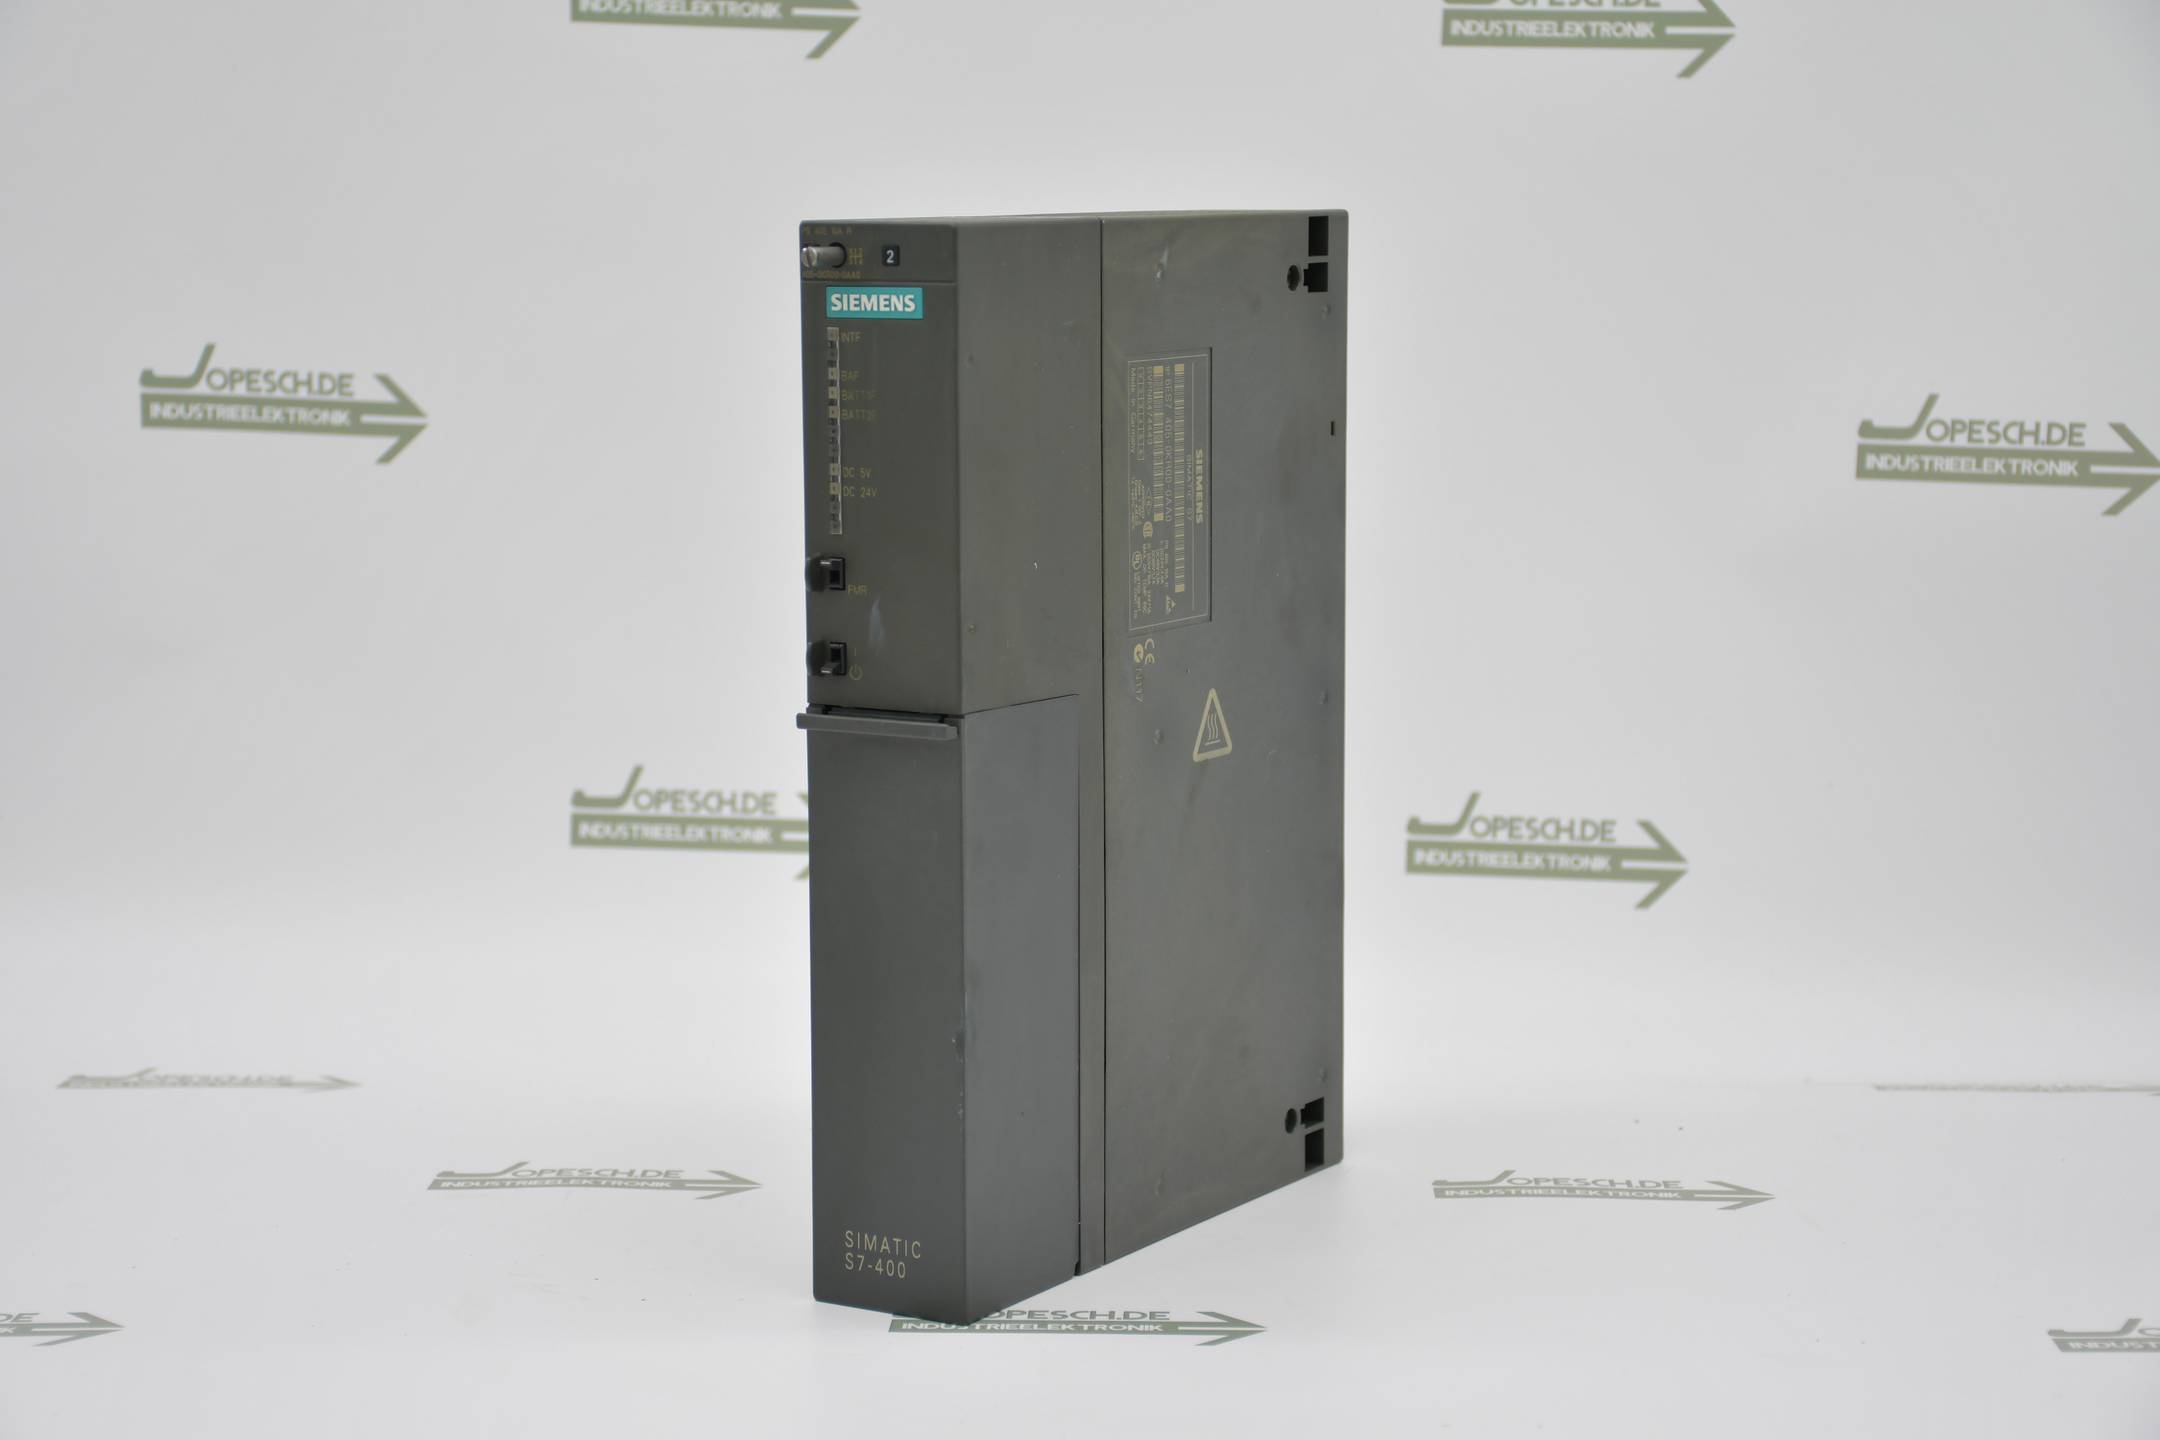 Siemens simatic S7-400 PS405 6ES7 405-0KR00-0AA0 ( 6ES7405-0KR00-0AA0 ) 